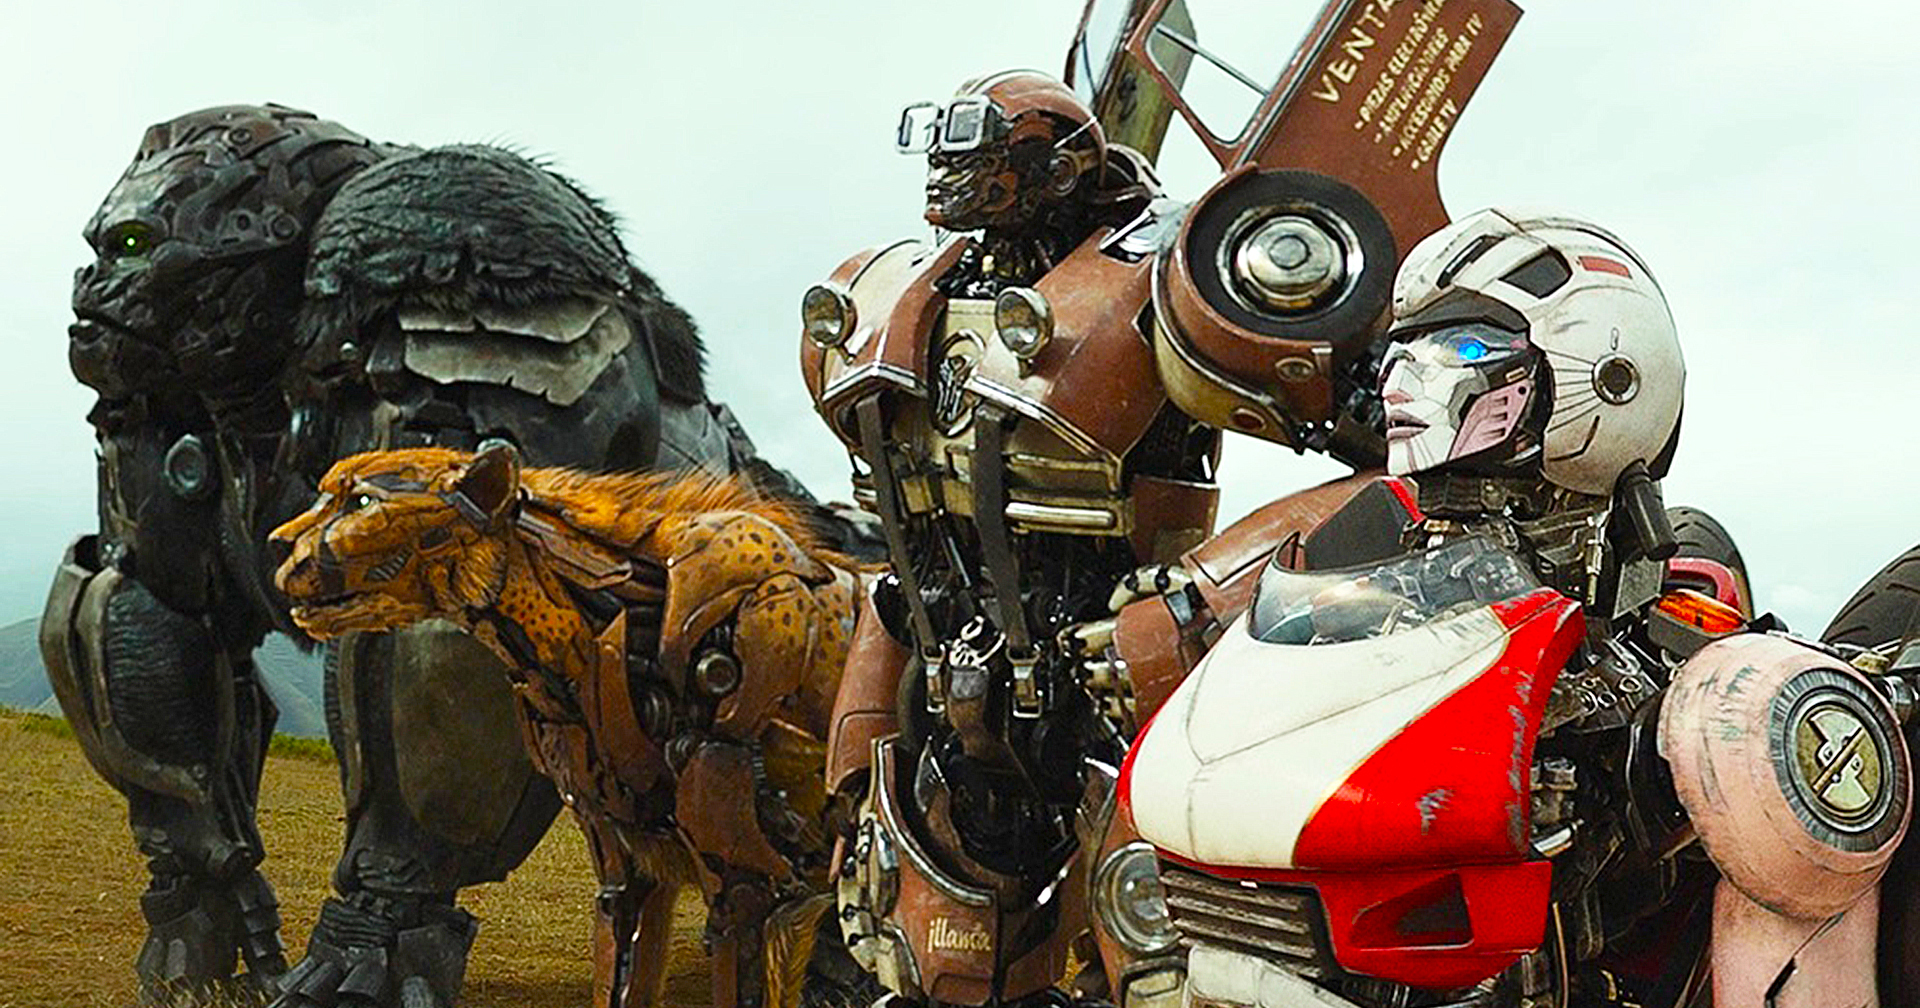 Michael Bay เกือบยุบแผนรวม ‘Transformers’ เข้ากับ ‘G.I. Joe’ : ลั่นไม่อยากให้หนังหุ่นยนต์ของตนถูกด้อยค่า